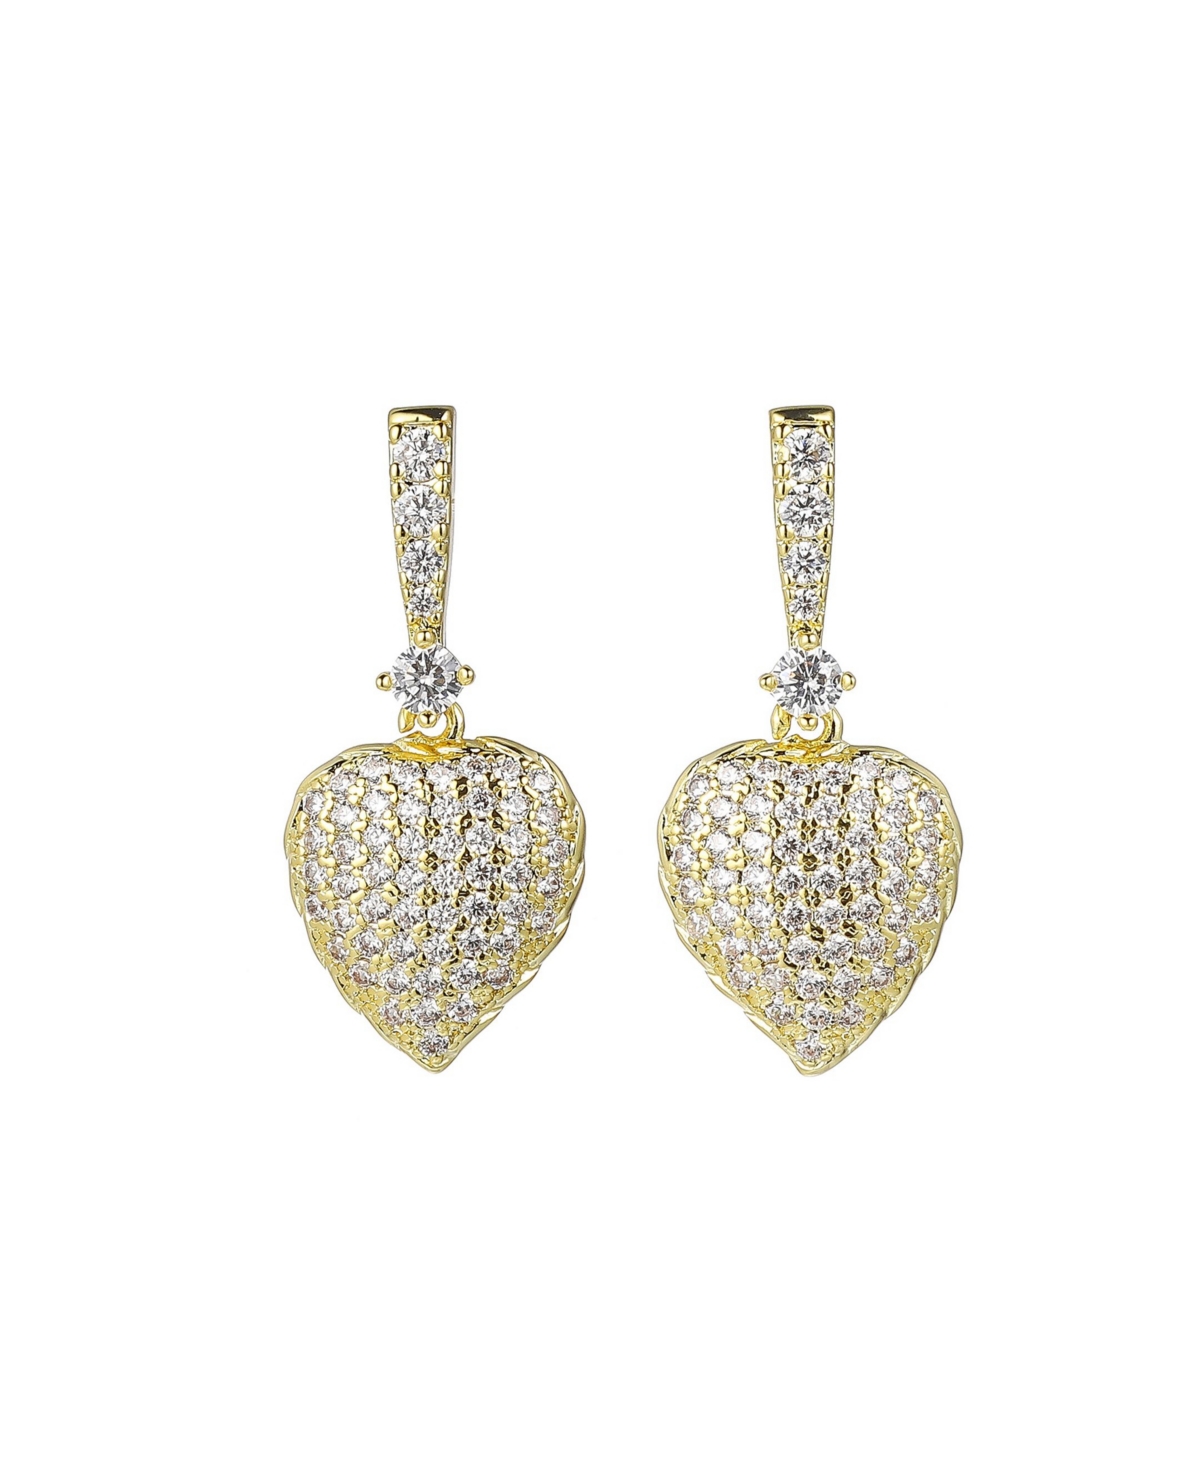 A & M Gold-Tone Heart Drop Earrings